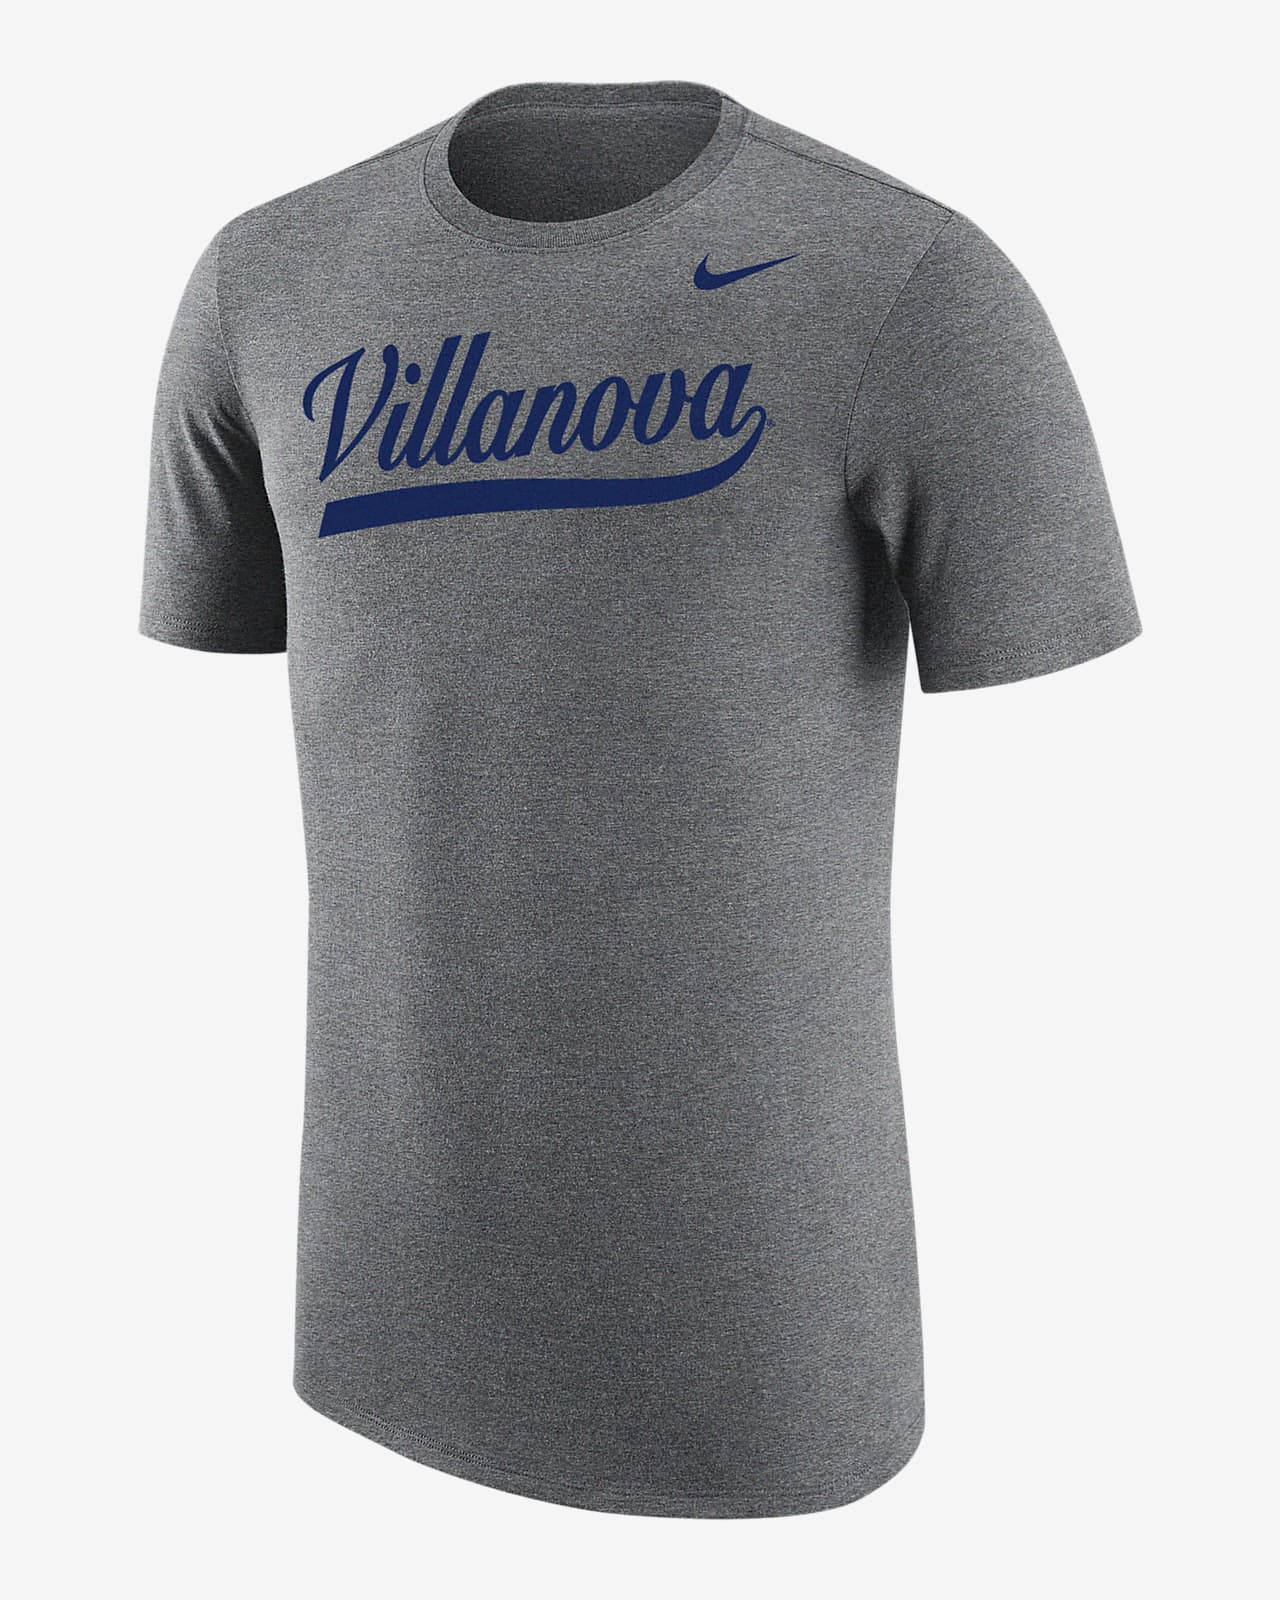 Villanova Men's Nike College T-Shirt